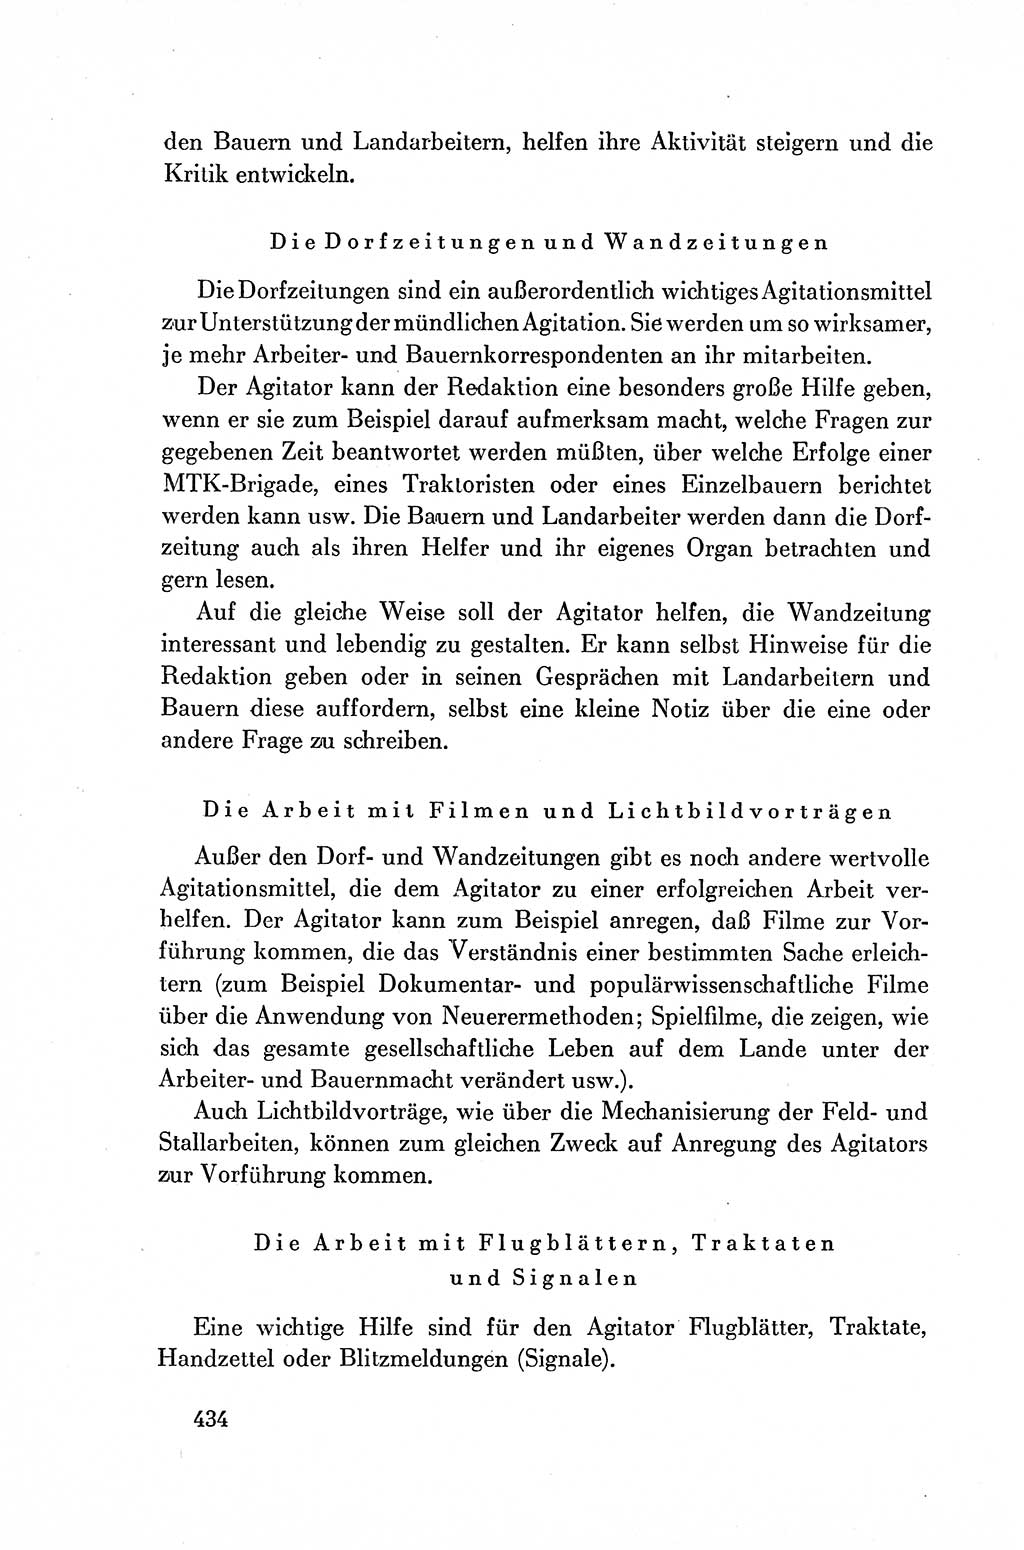 Dokumente der Sozialistischen Einheitspartei Deutschlands (SED) [Deutsche Demokratische Republik (DDR)] 1954-1955, Seite 434 (Dok. SED DDR 1954-1955, S. 434)